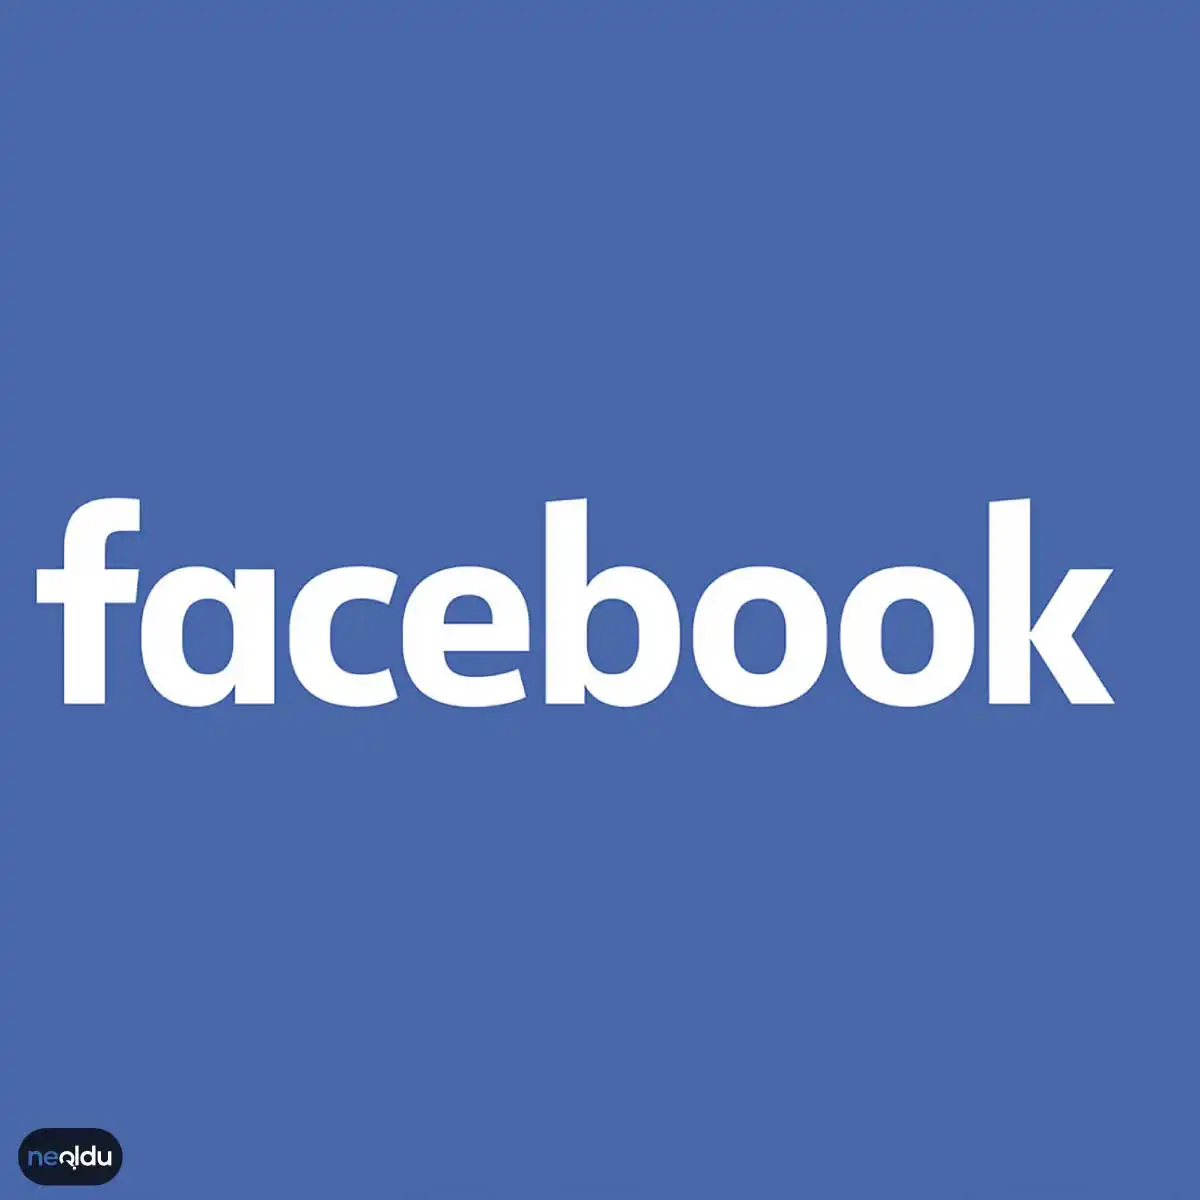 Facebook Hesap Oluşturma, Kaydolma | Hesap Nasıl Açılır?